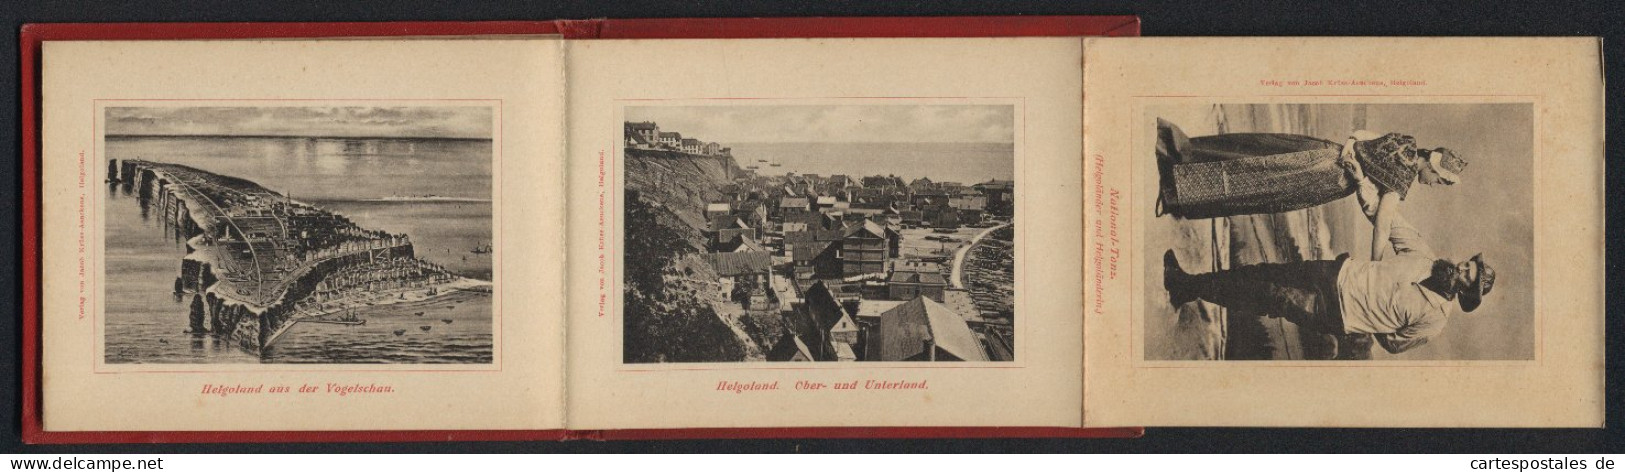 Leporello-Album Helgoland Mit 12 Lichdruck-Ansichten, Helgoländer In Tracht, Ober- Und Unterland, Fahrstuhl, Mönch  - Lithografieën